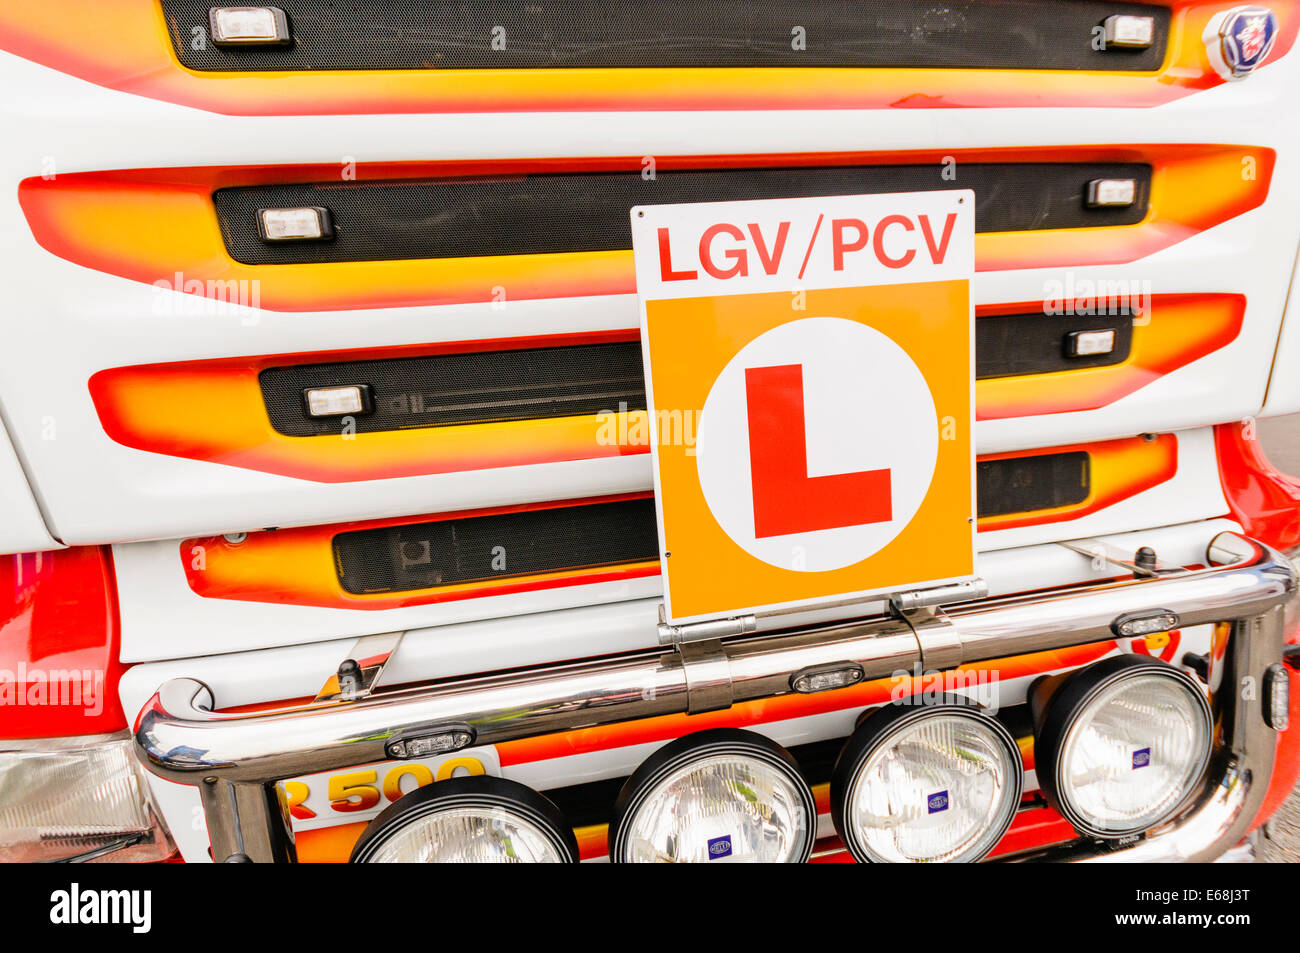 Un tracteur articulé semi Scania cabine avec une LGV apprenant PGV badge. Banque D'Images